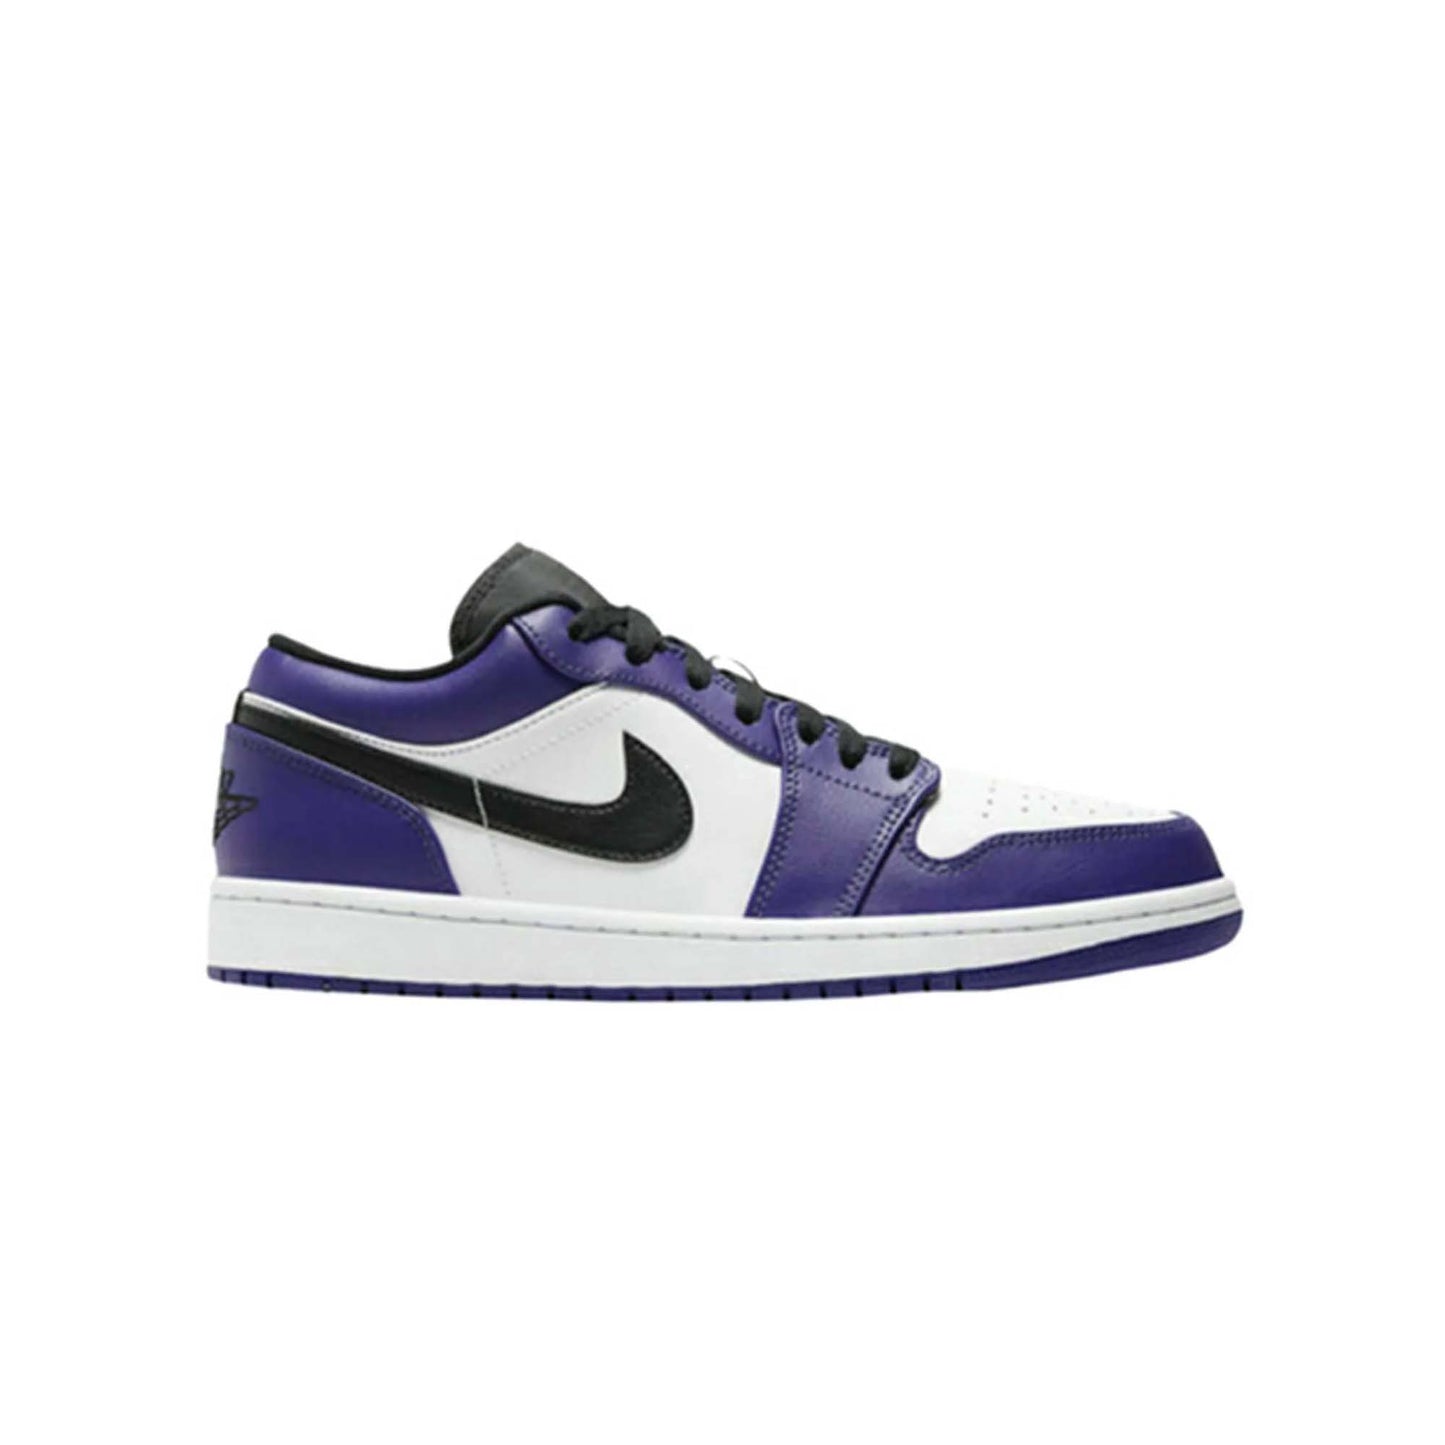 Nike Air Jordan Low "Court Purple" UK7